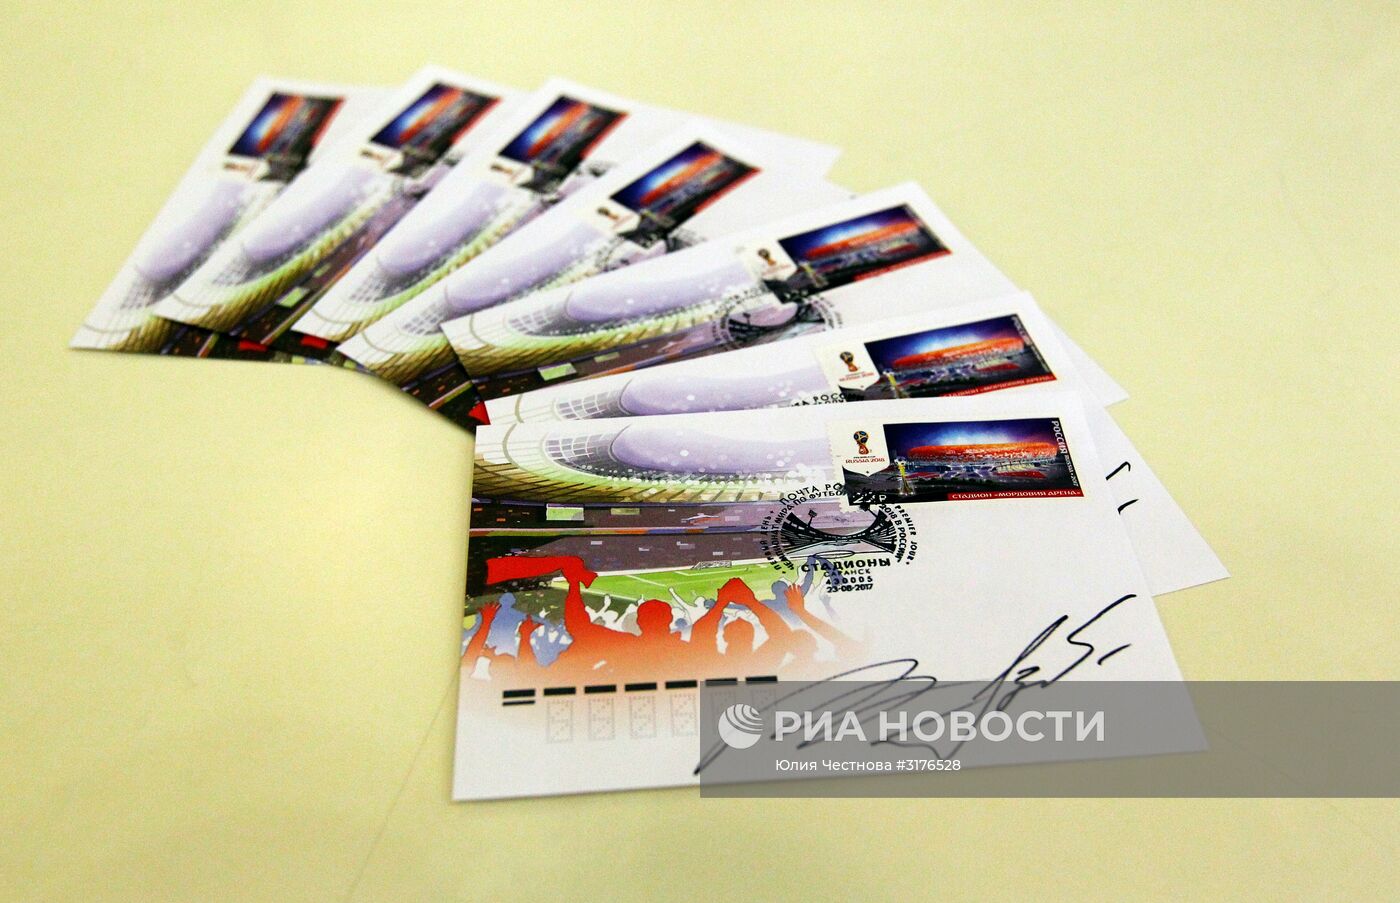 Церемония гашения почтовой марки к ЧМ-2018 в Саранске